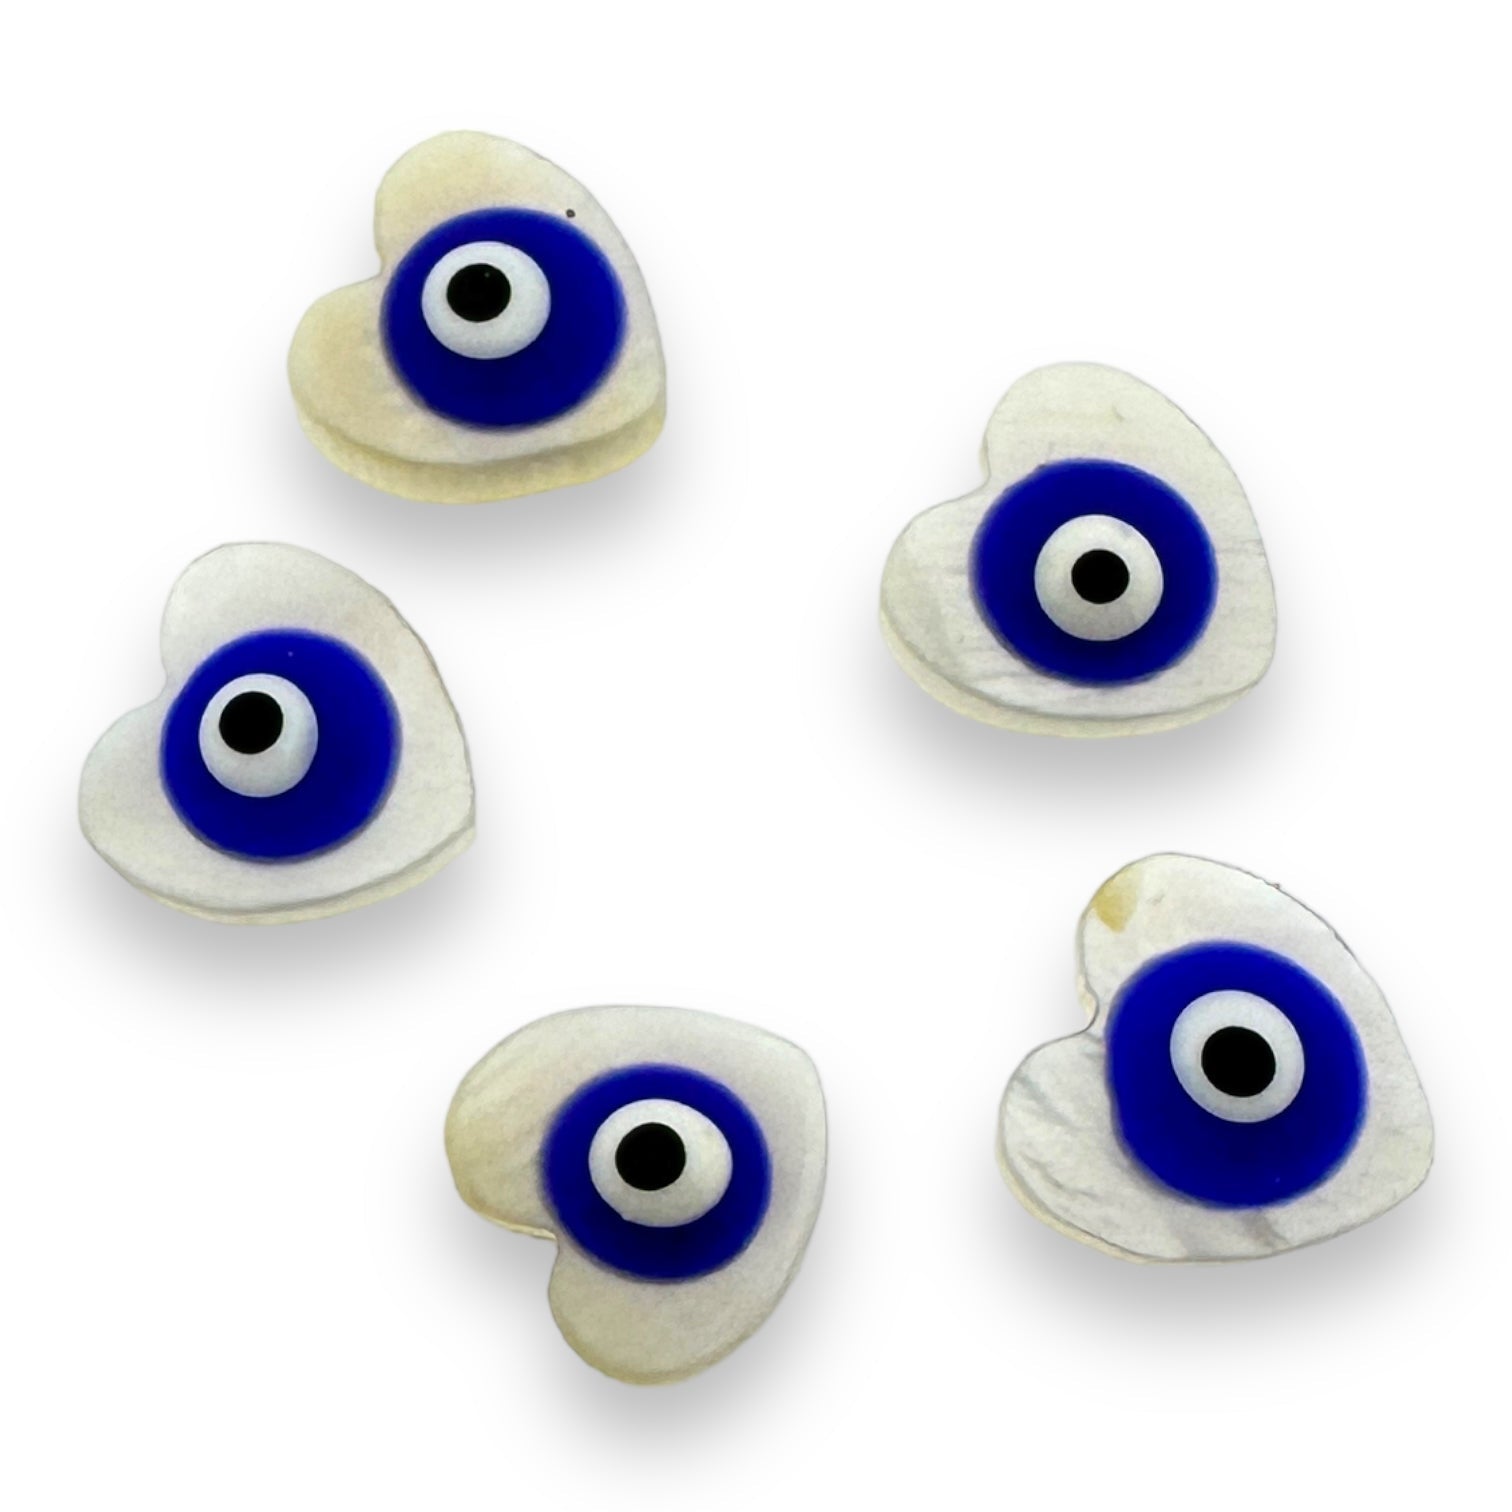 Zoetwaterschelp kraal hartje evil eye donker blauw 10mm-Kralen-Kraaltjes van Renate